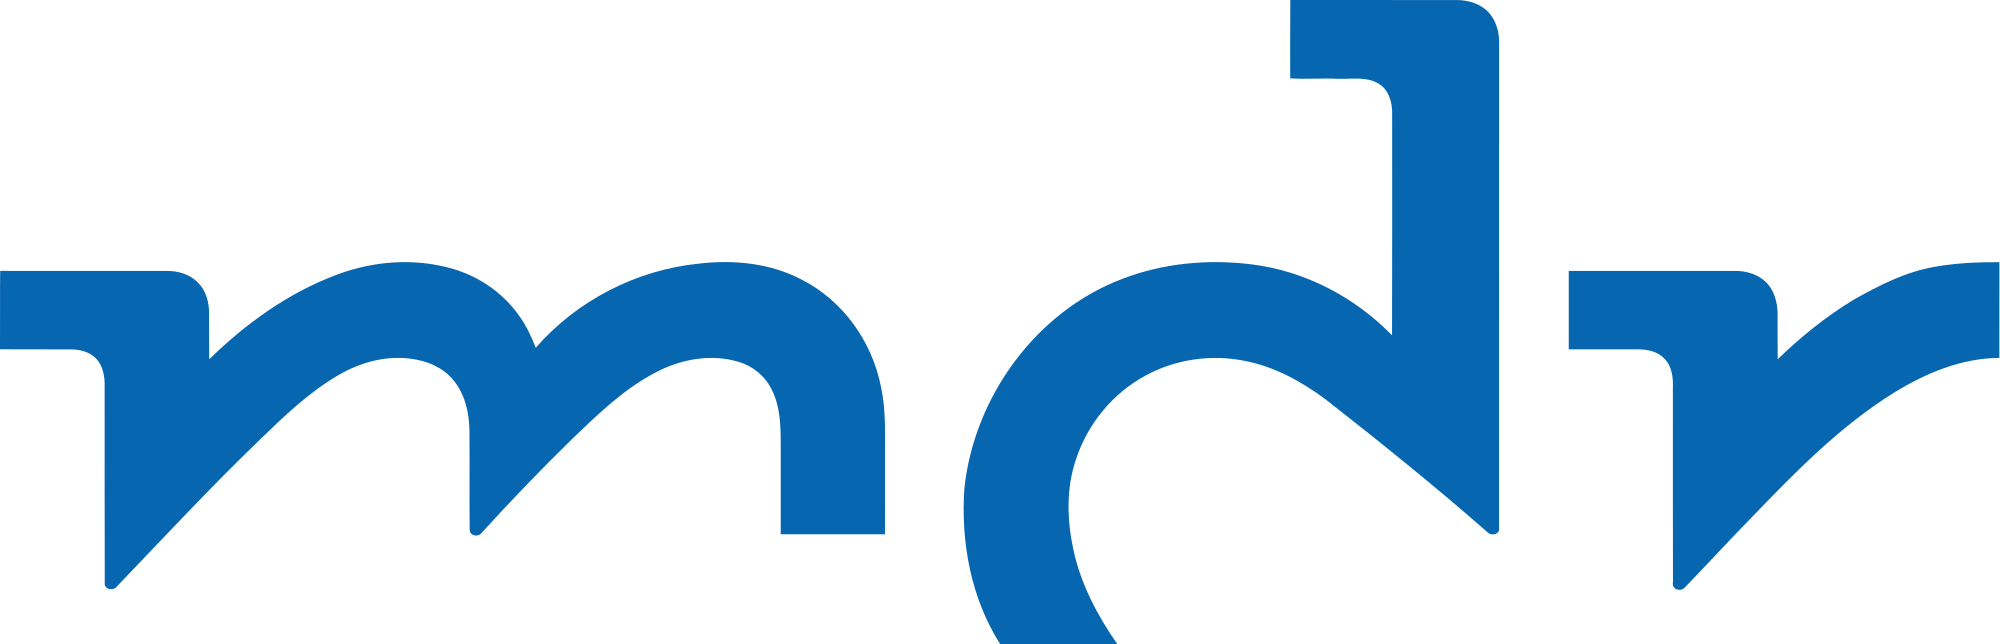 MDR_Logo_2017.svg.png